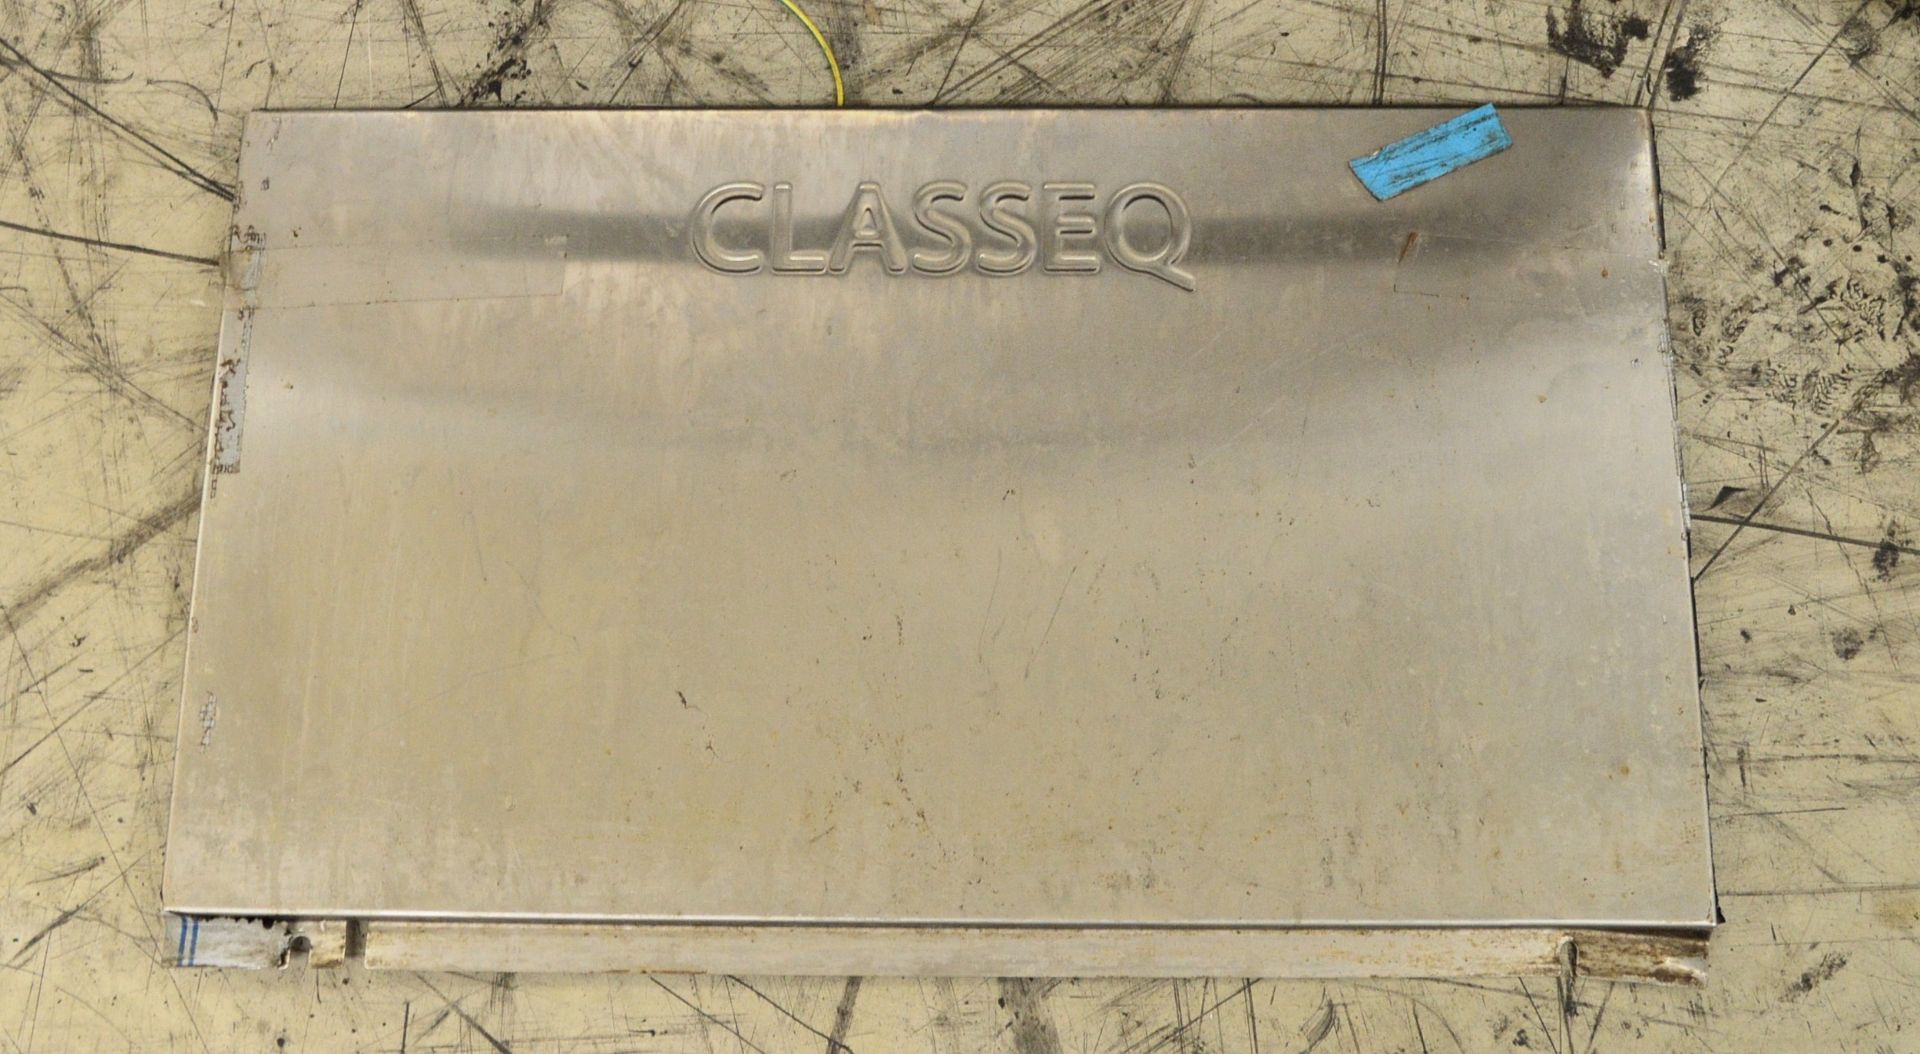 Class EQ 816V0001 240V Dishwasher. - Image 6 of 6